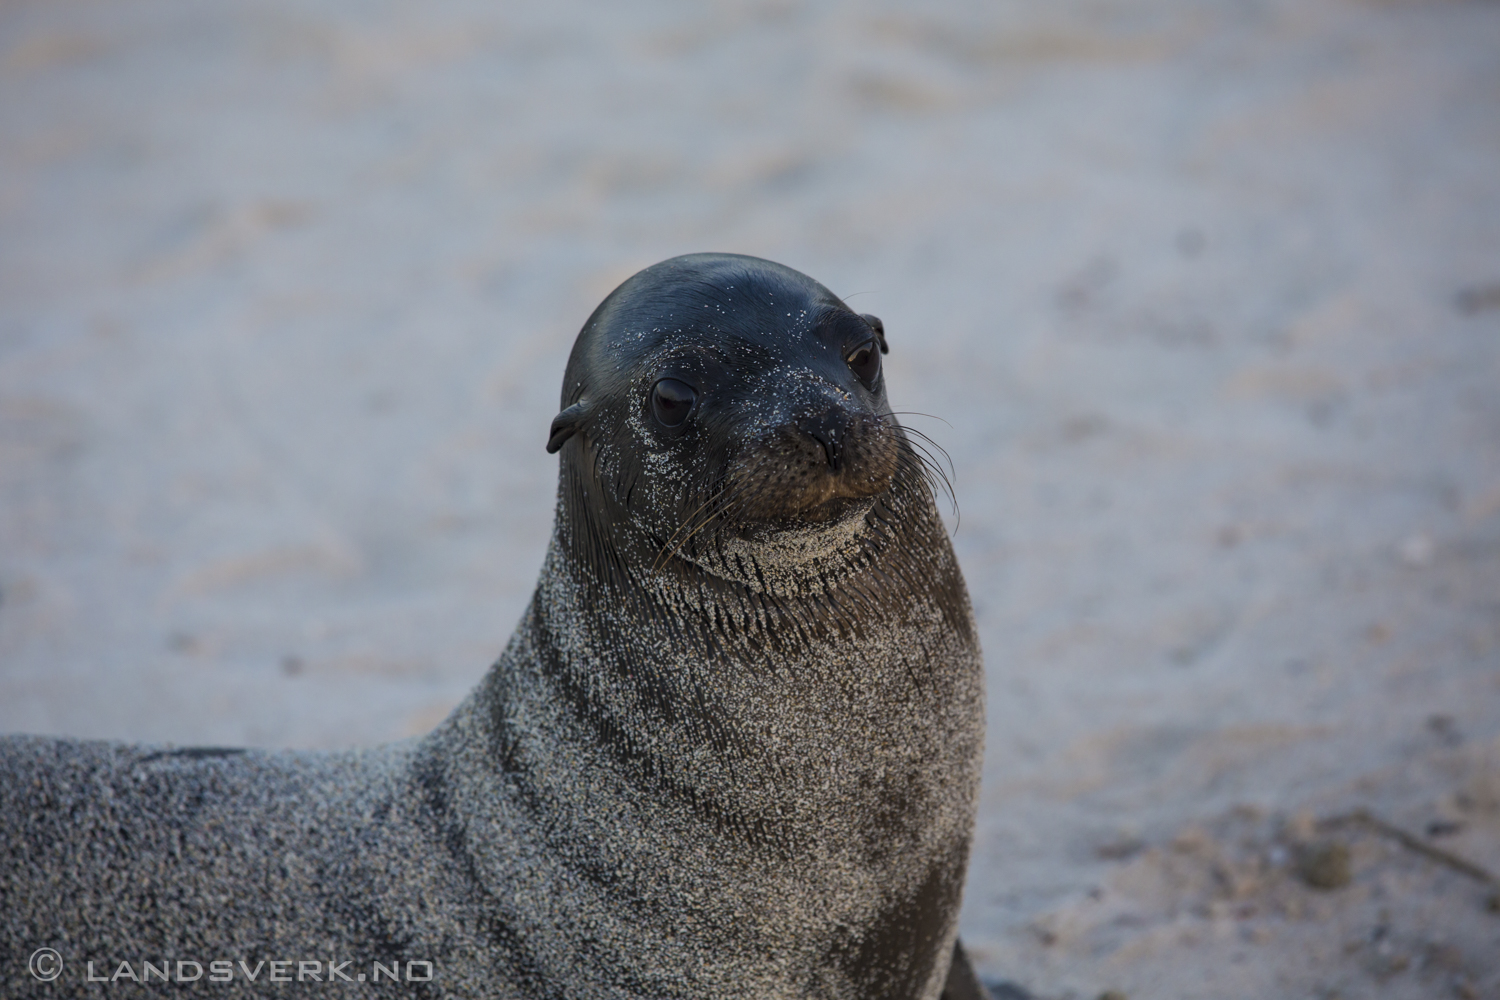 Wild Sea Lion, Islas Plaza, Isla Santa Cruz, Galapagos. 

(Canon EOS 5D Mark III / Canon EF 70-200mm f/2.8 L IS II USM)